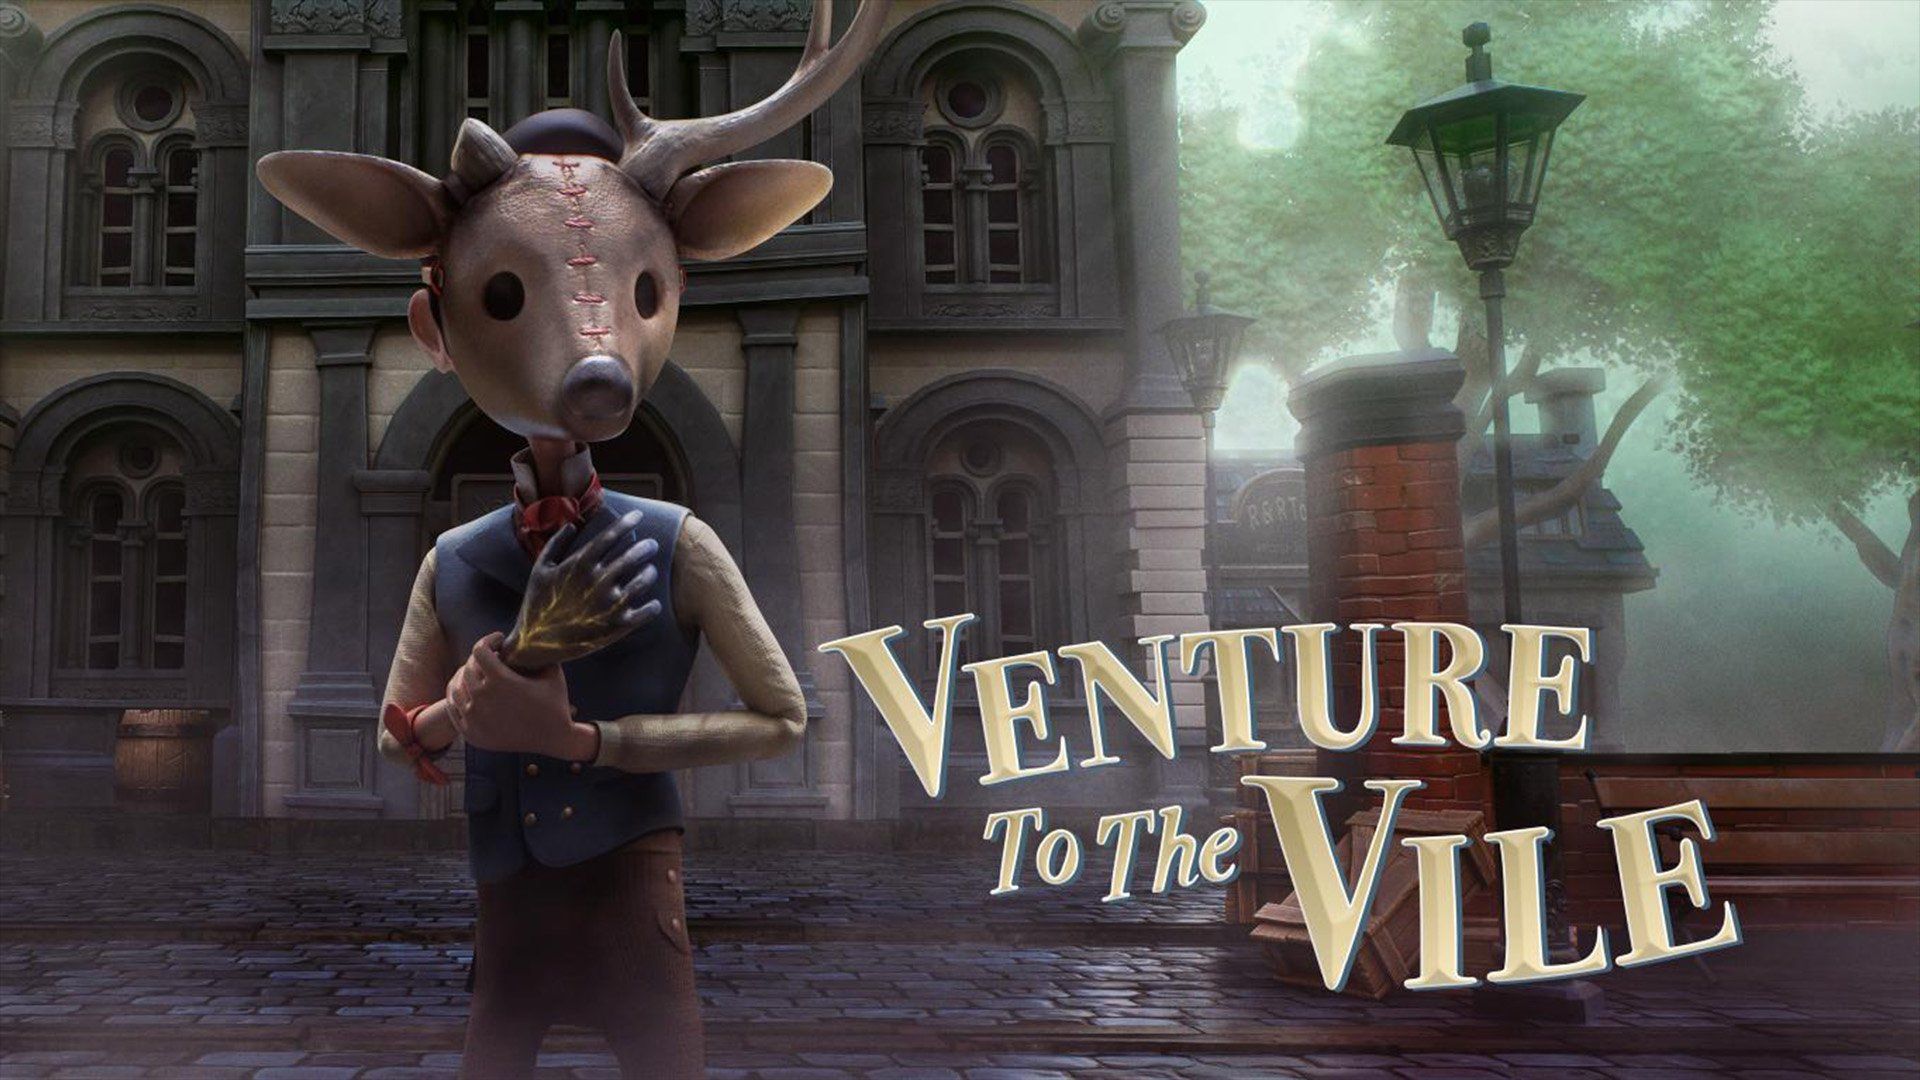 Venture to the Vile uscirà su PC il 7 maggio